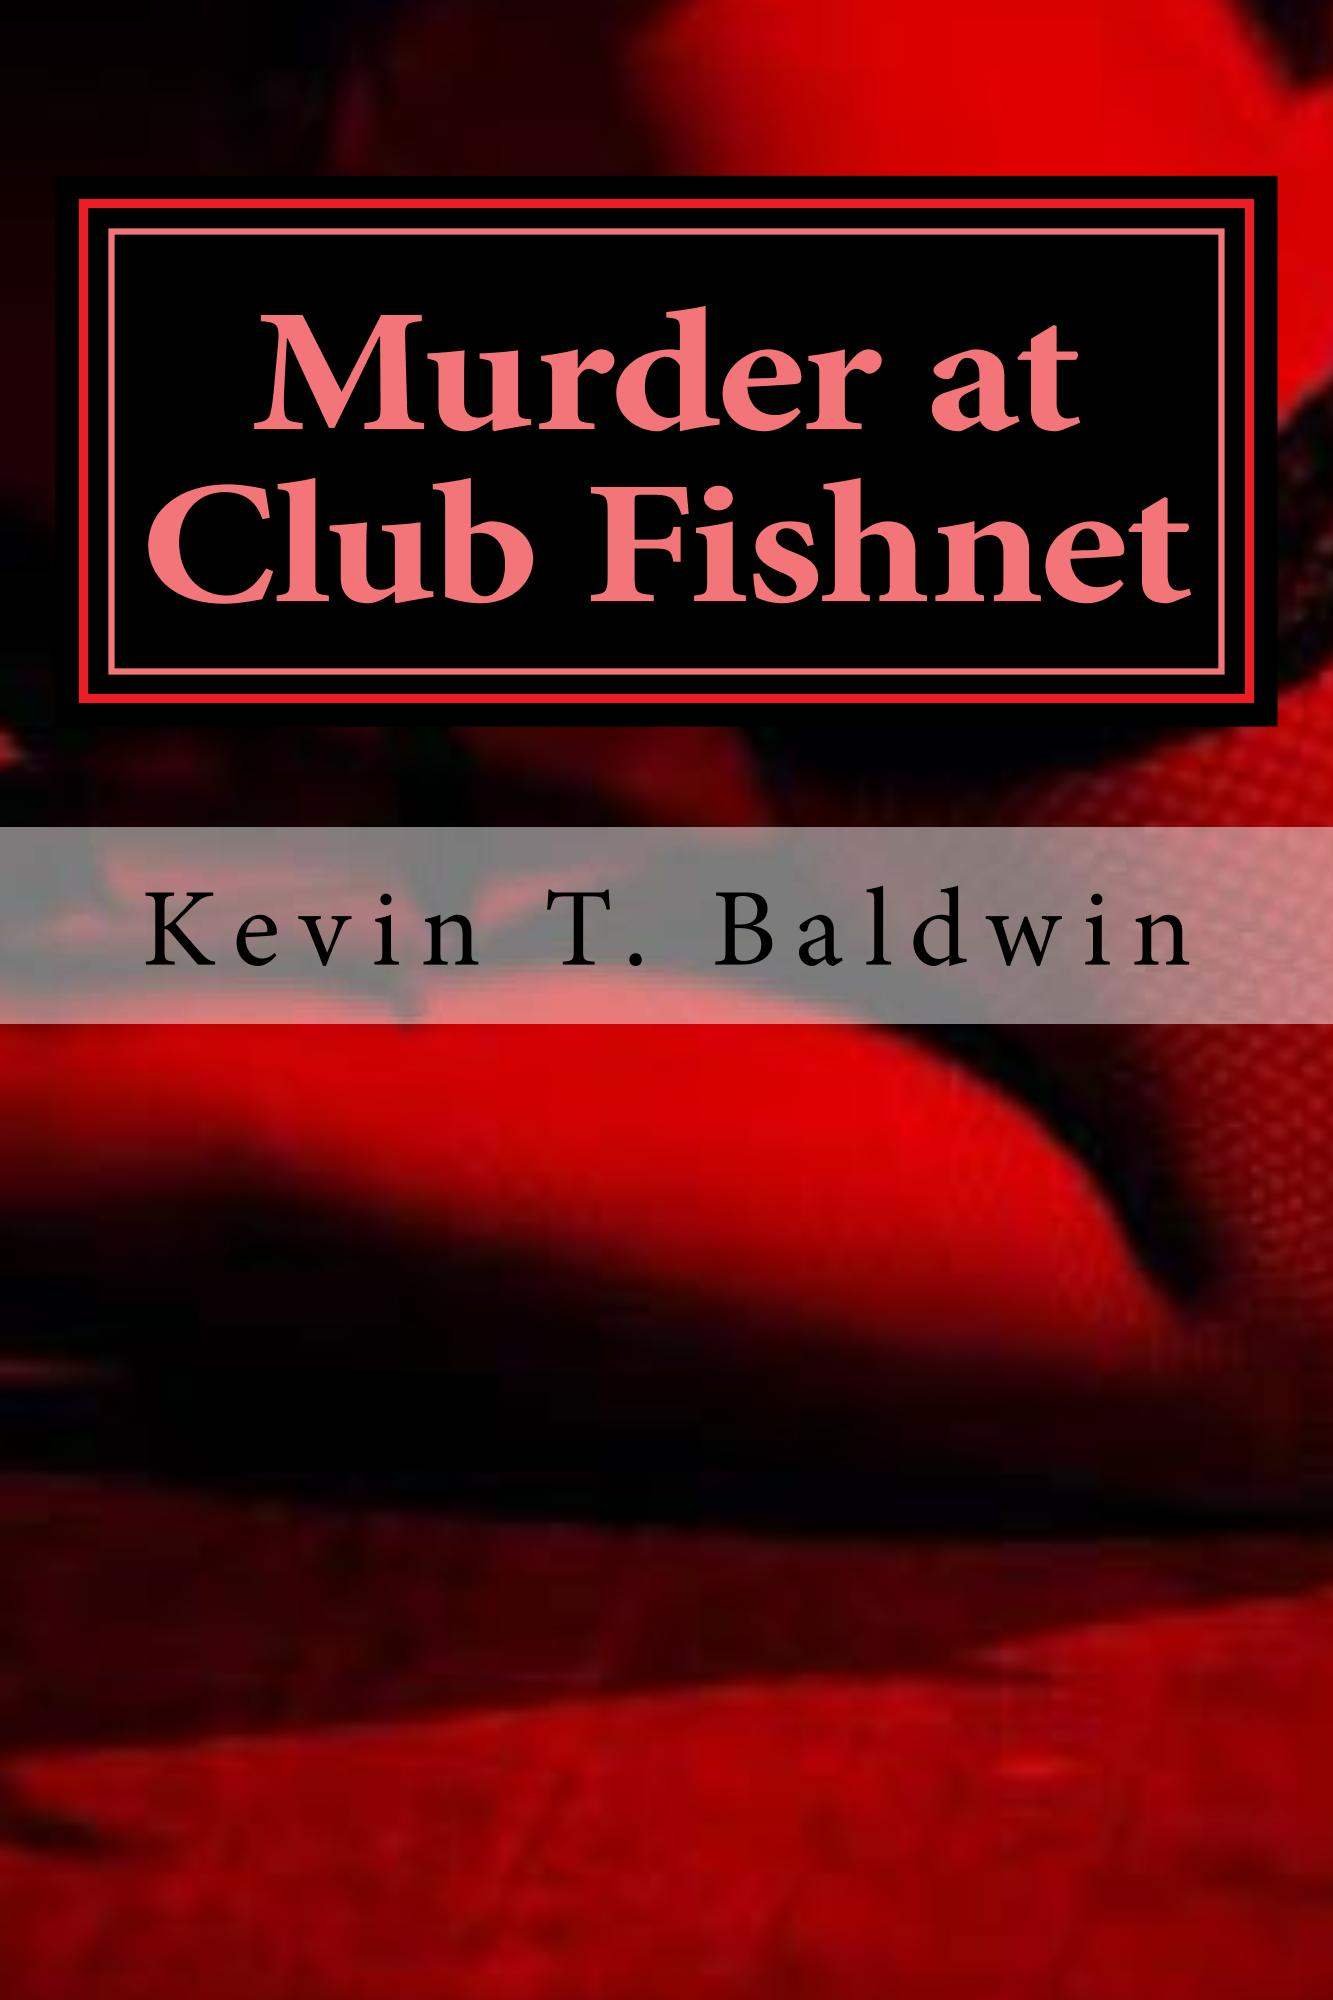 "Murder at Club Fishnet" - A Raunchy Murder Mystery Comedy Screenplay